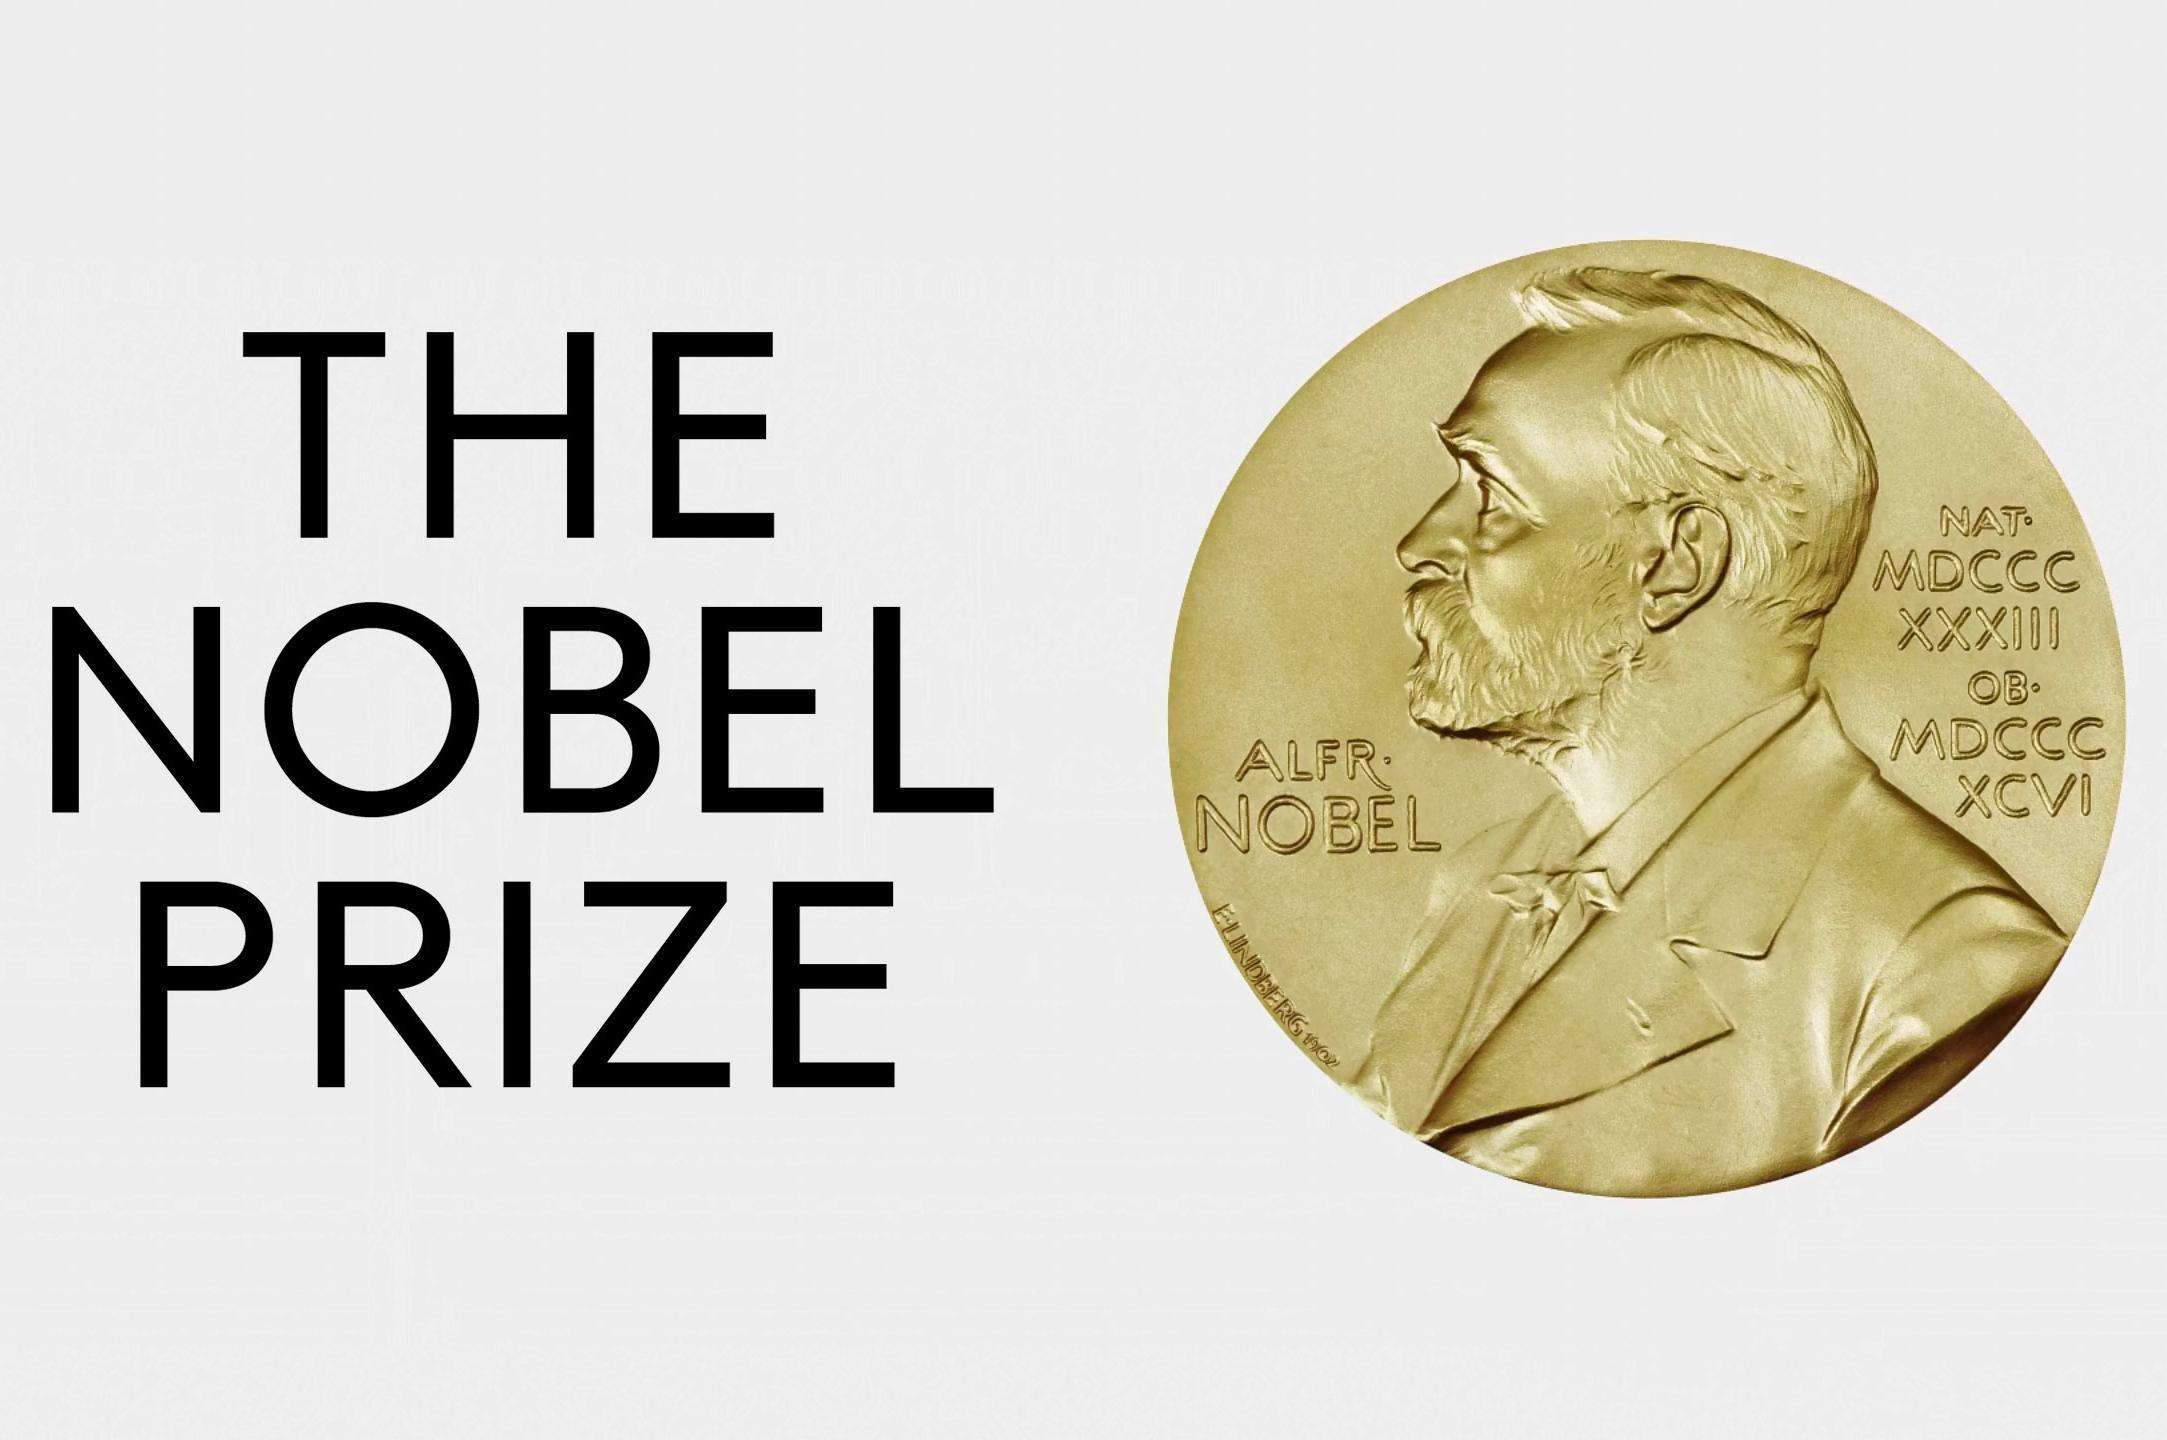 “诺贝尔奖”至今没有设立下列哪个学科的奖项